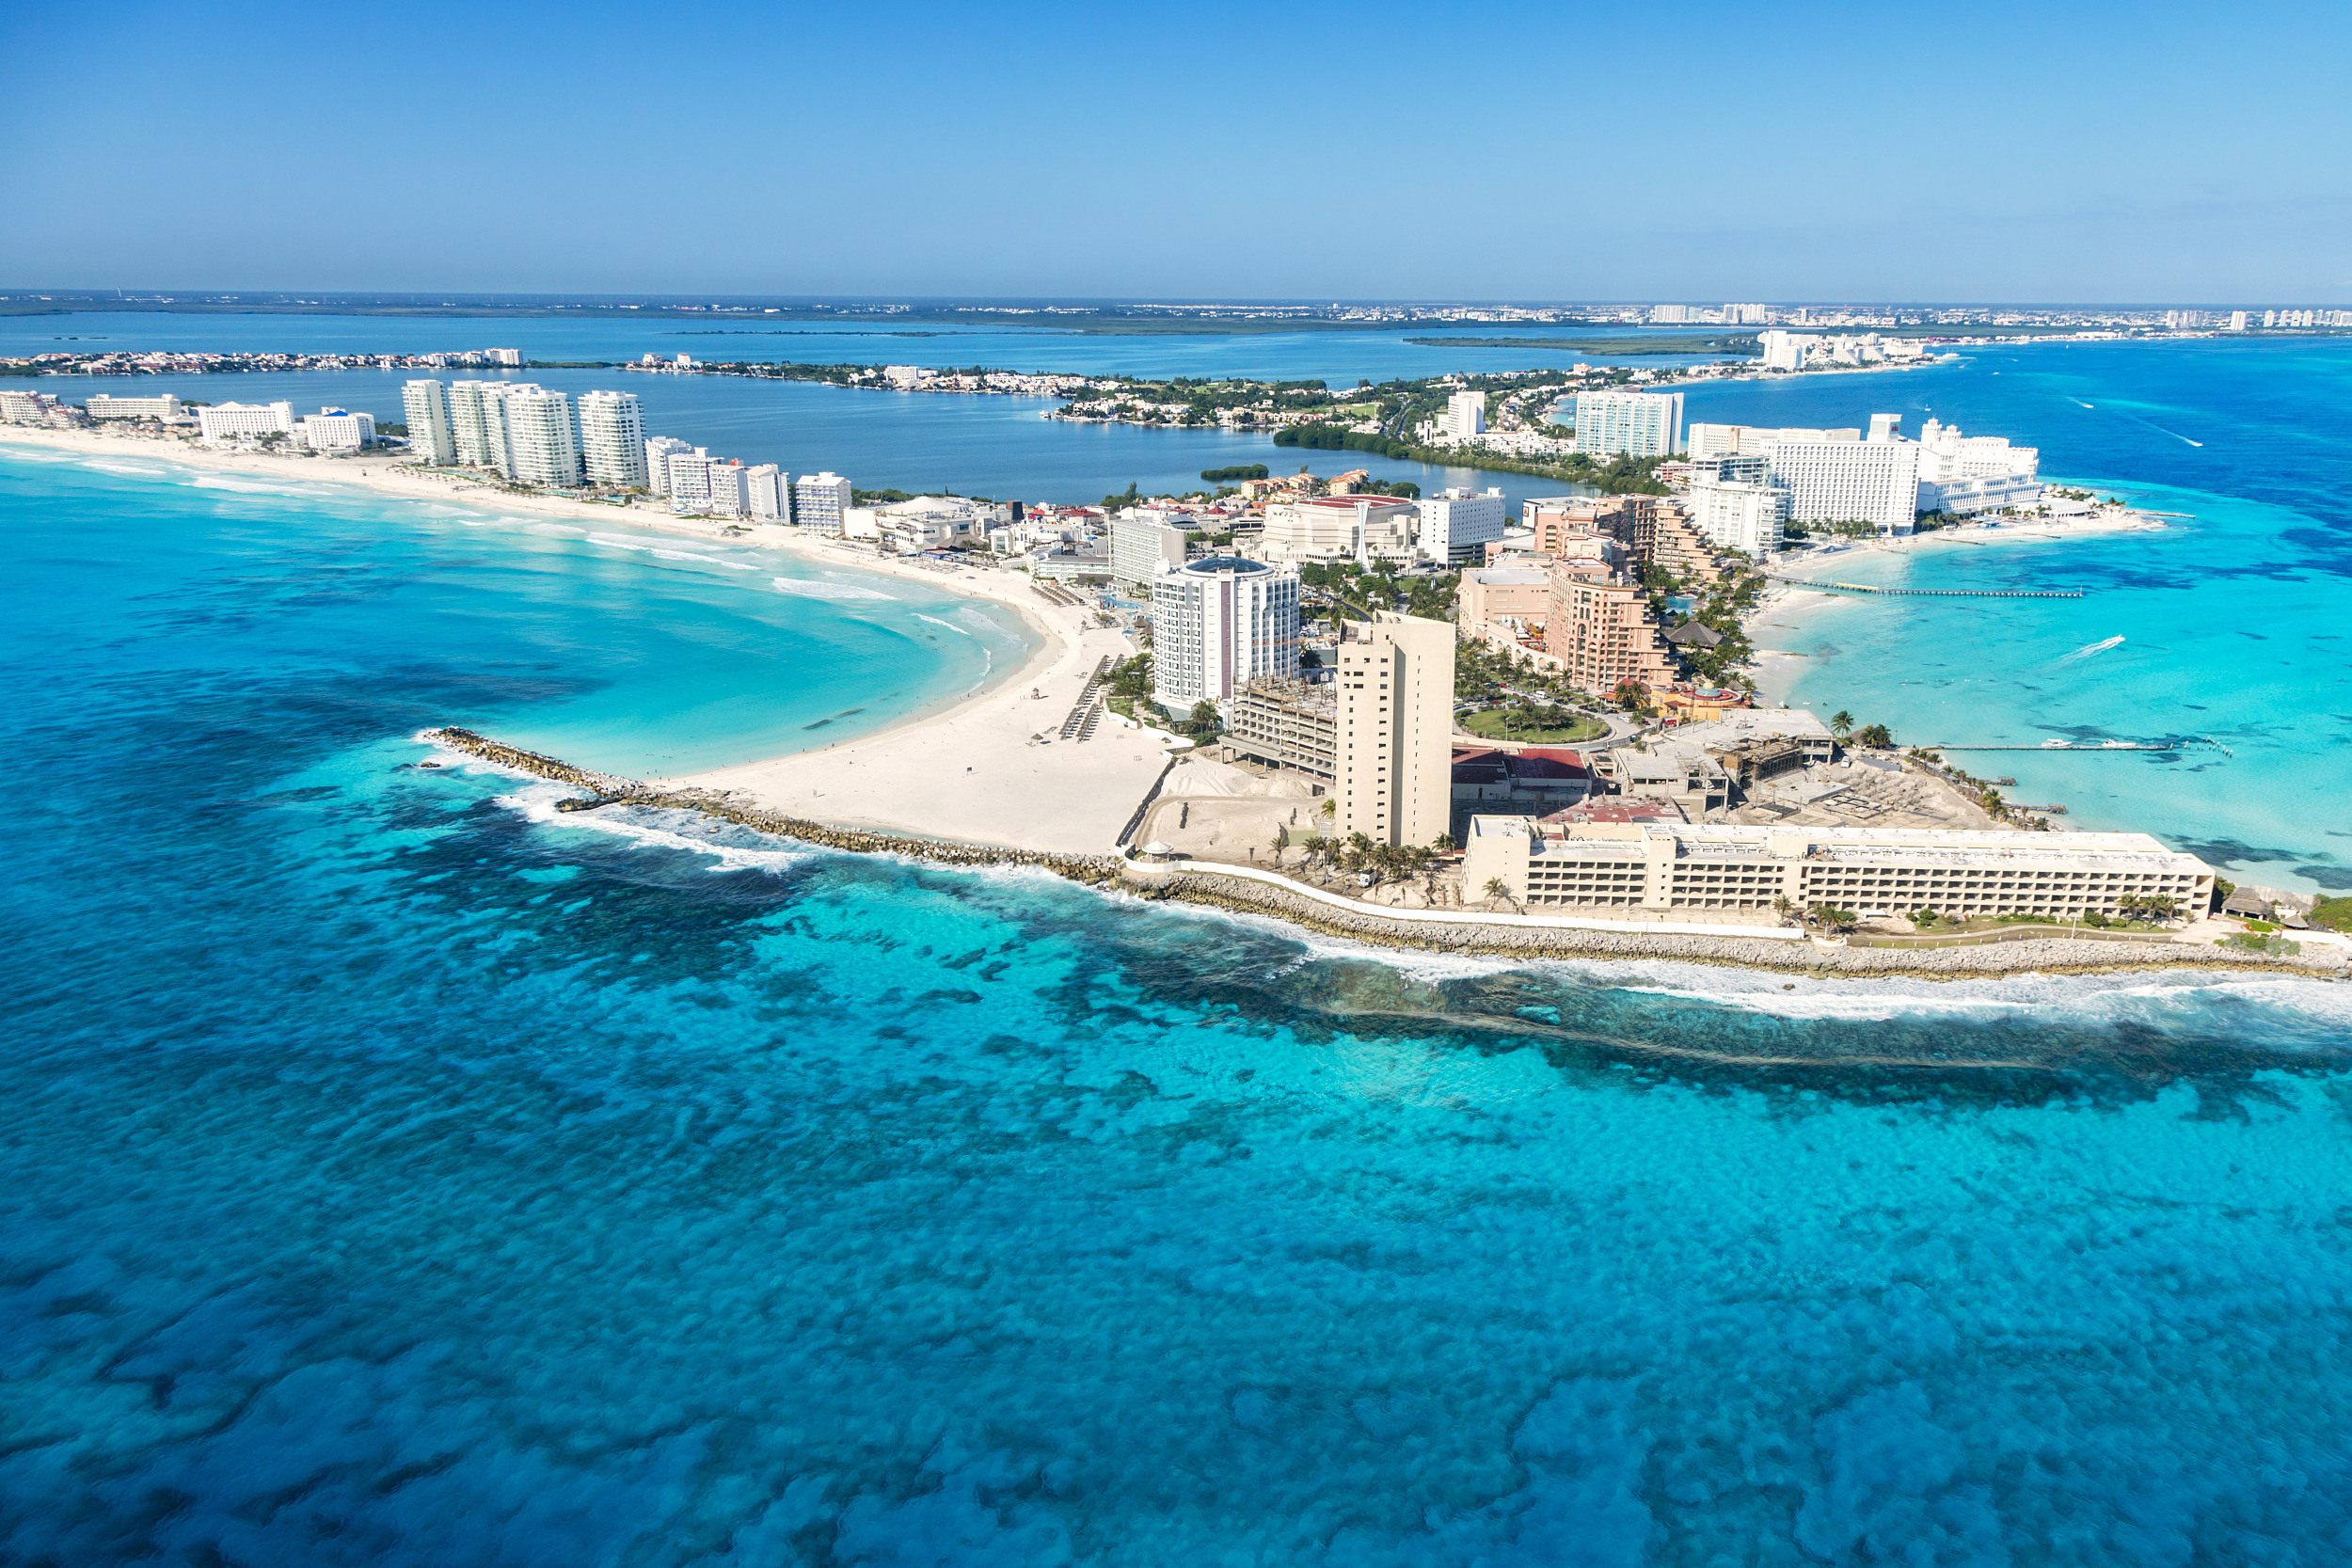 巴哈马都有直飞航线,其一直以来成为最受游客和买家亲崃的旅游和投资